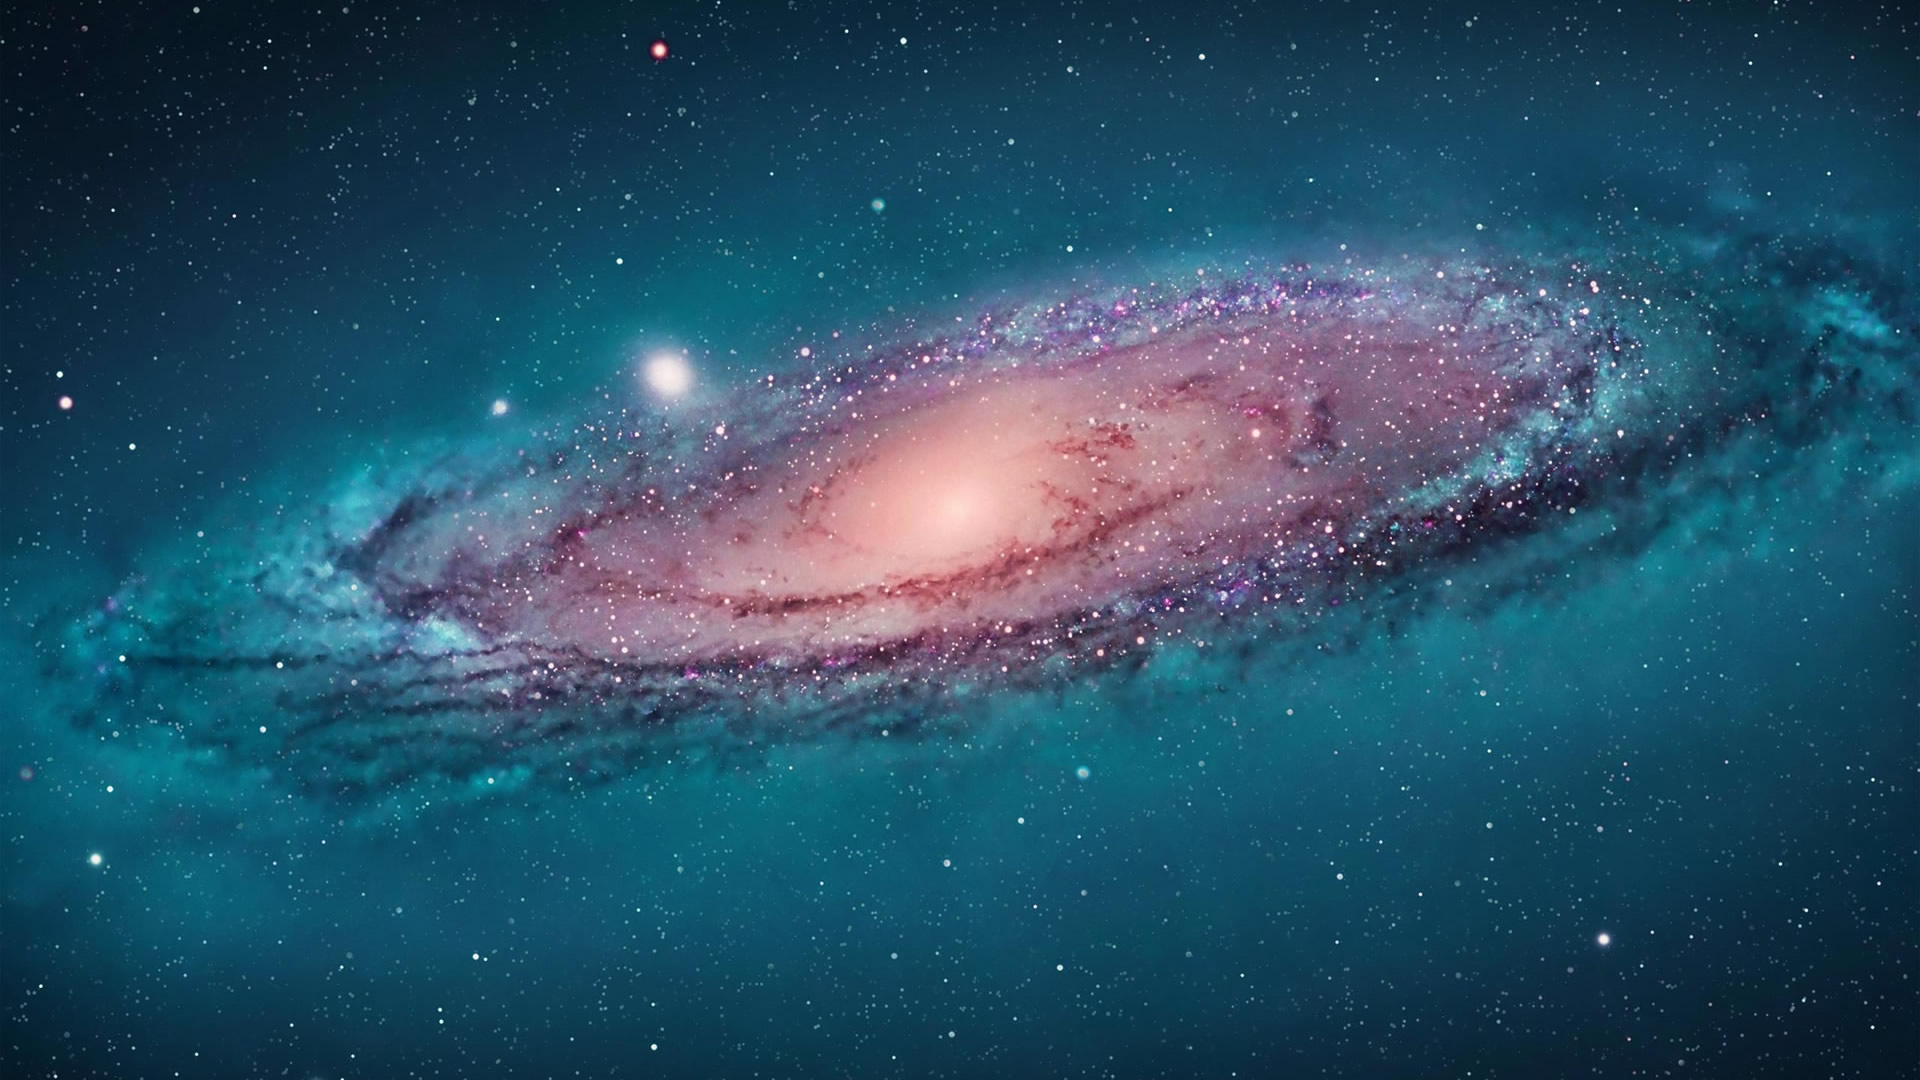 galaxie wallpaper herunterladen,galaxis,spiralgalaxie,atmosphäre,weltraum,astronomisches objekt